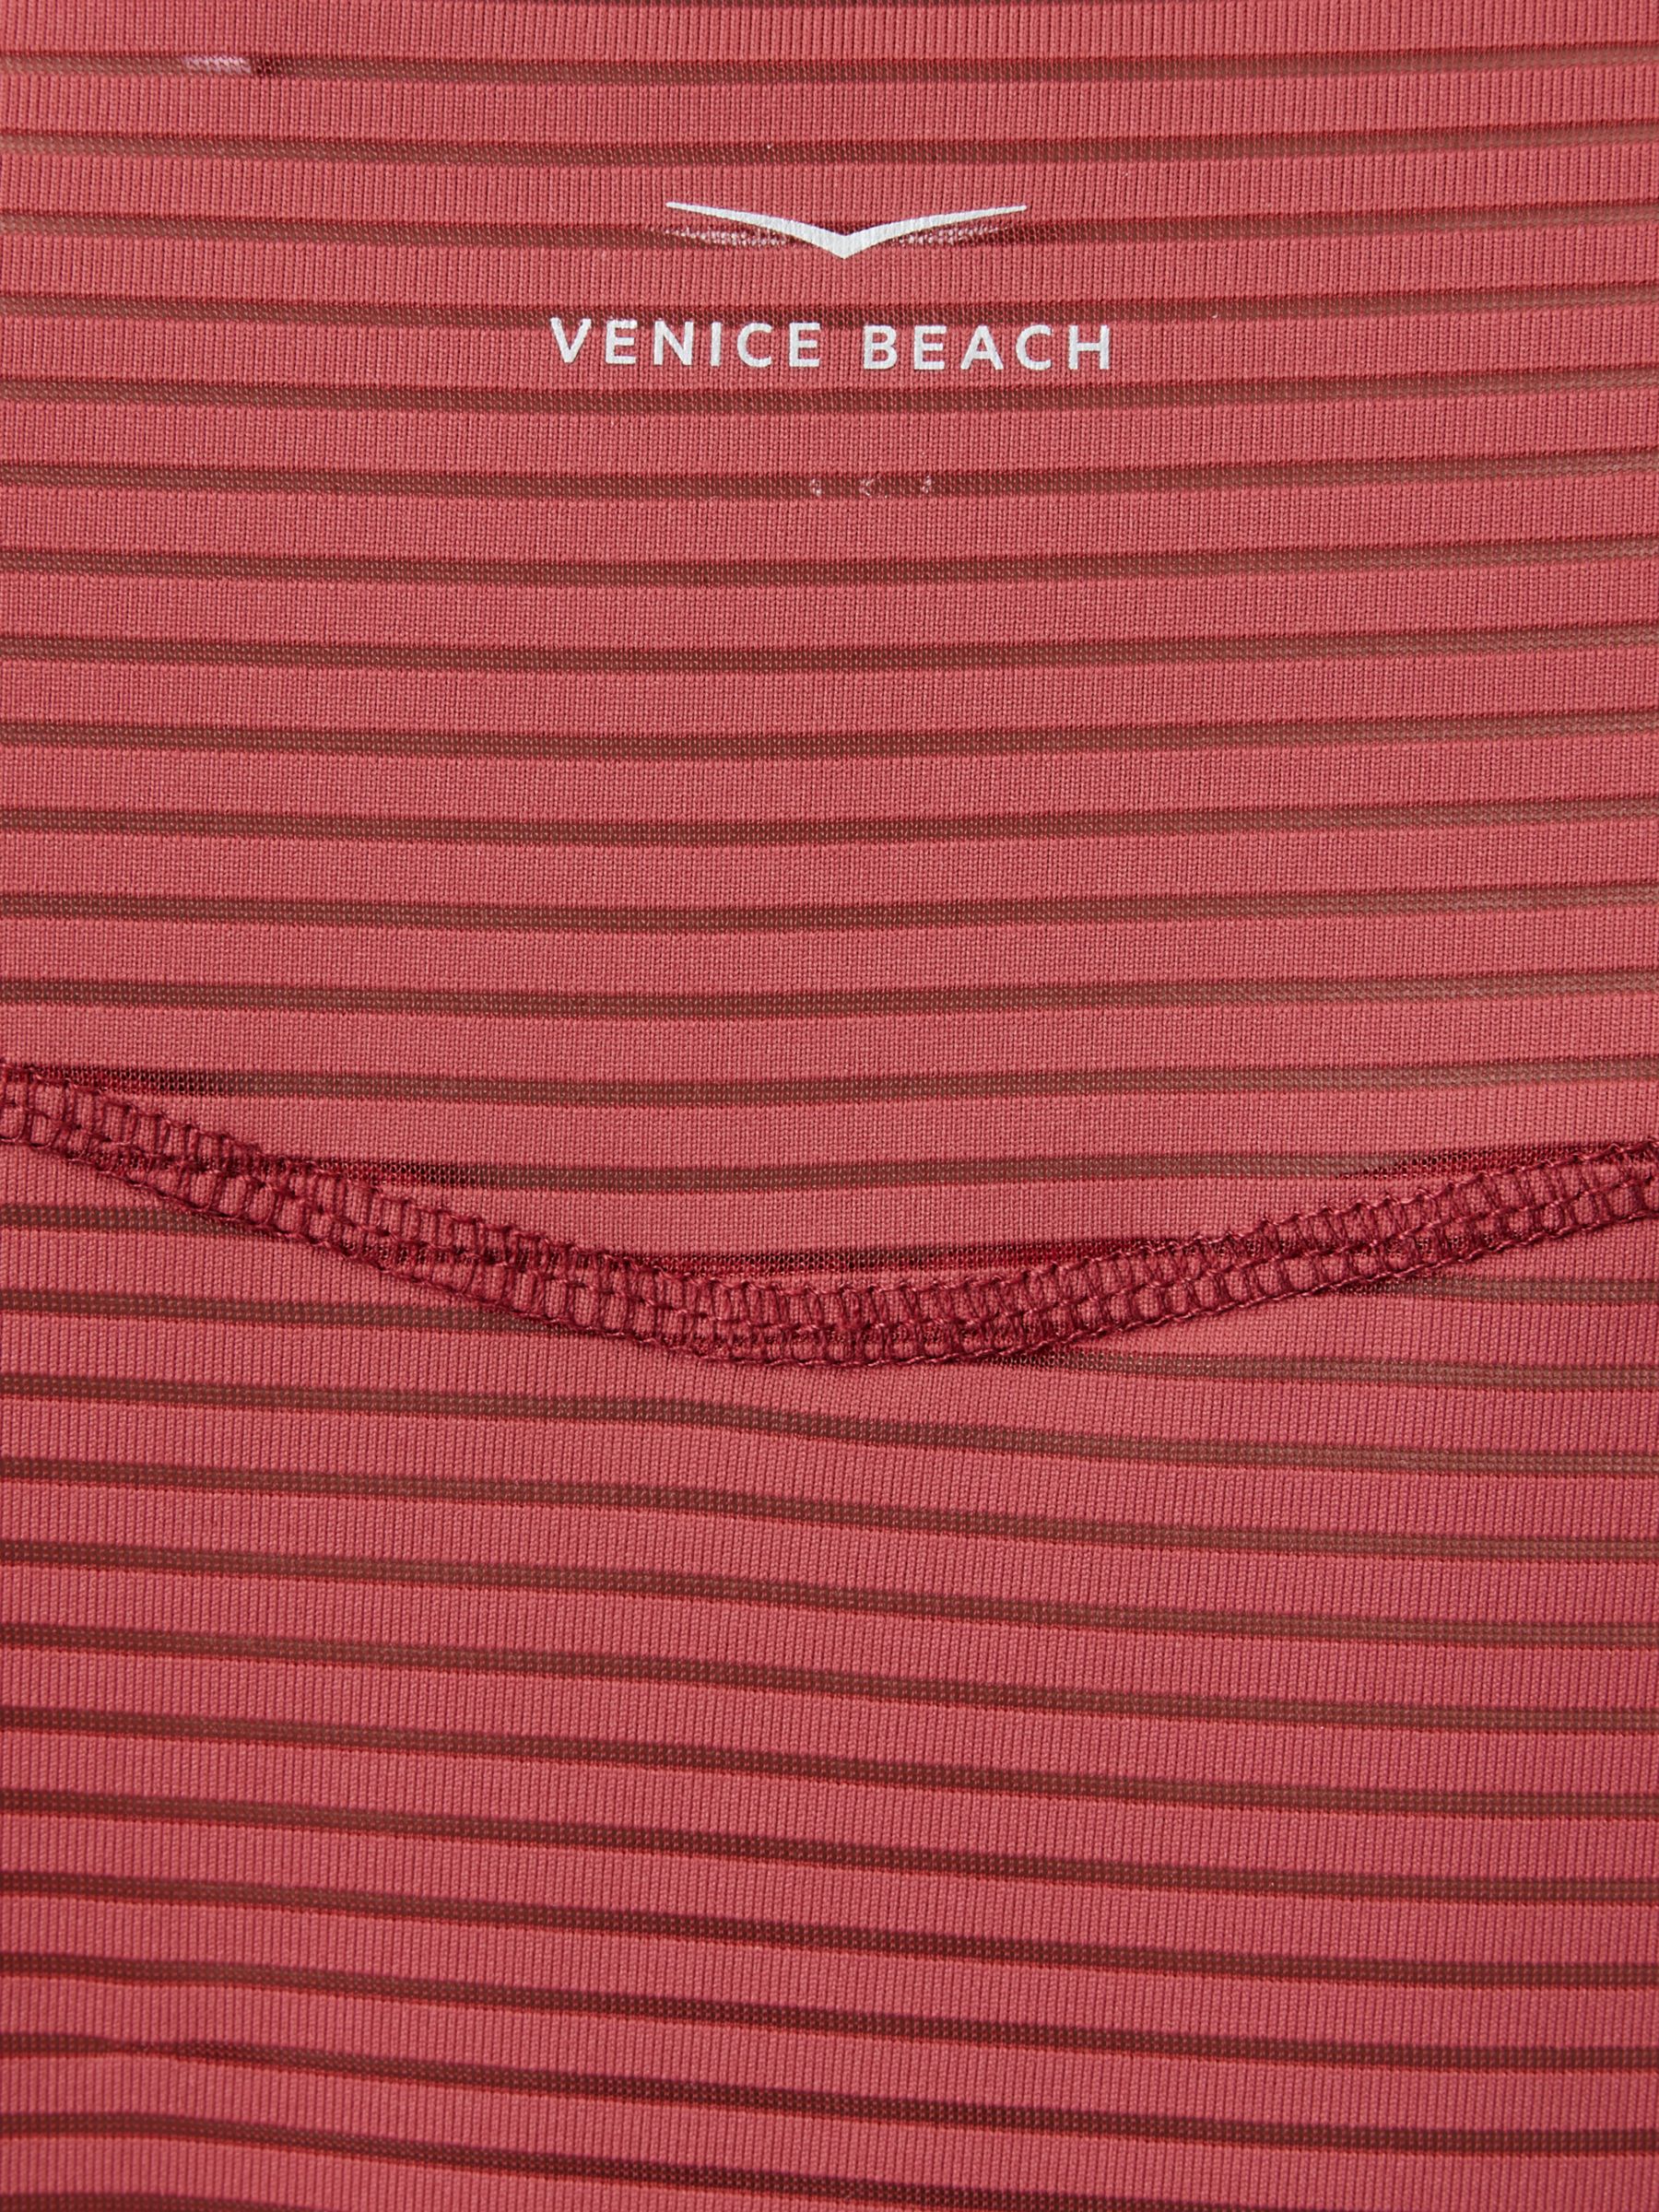 Venice Beach Damaris Short Sleeve Gym Top, Deep Red, XS